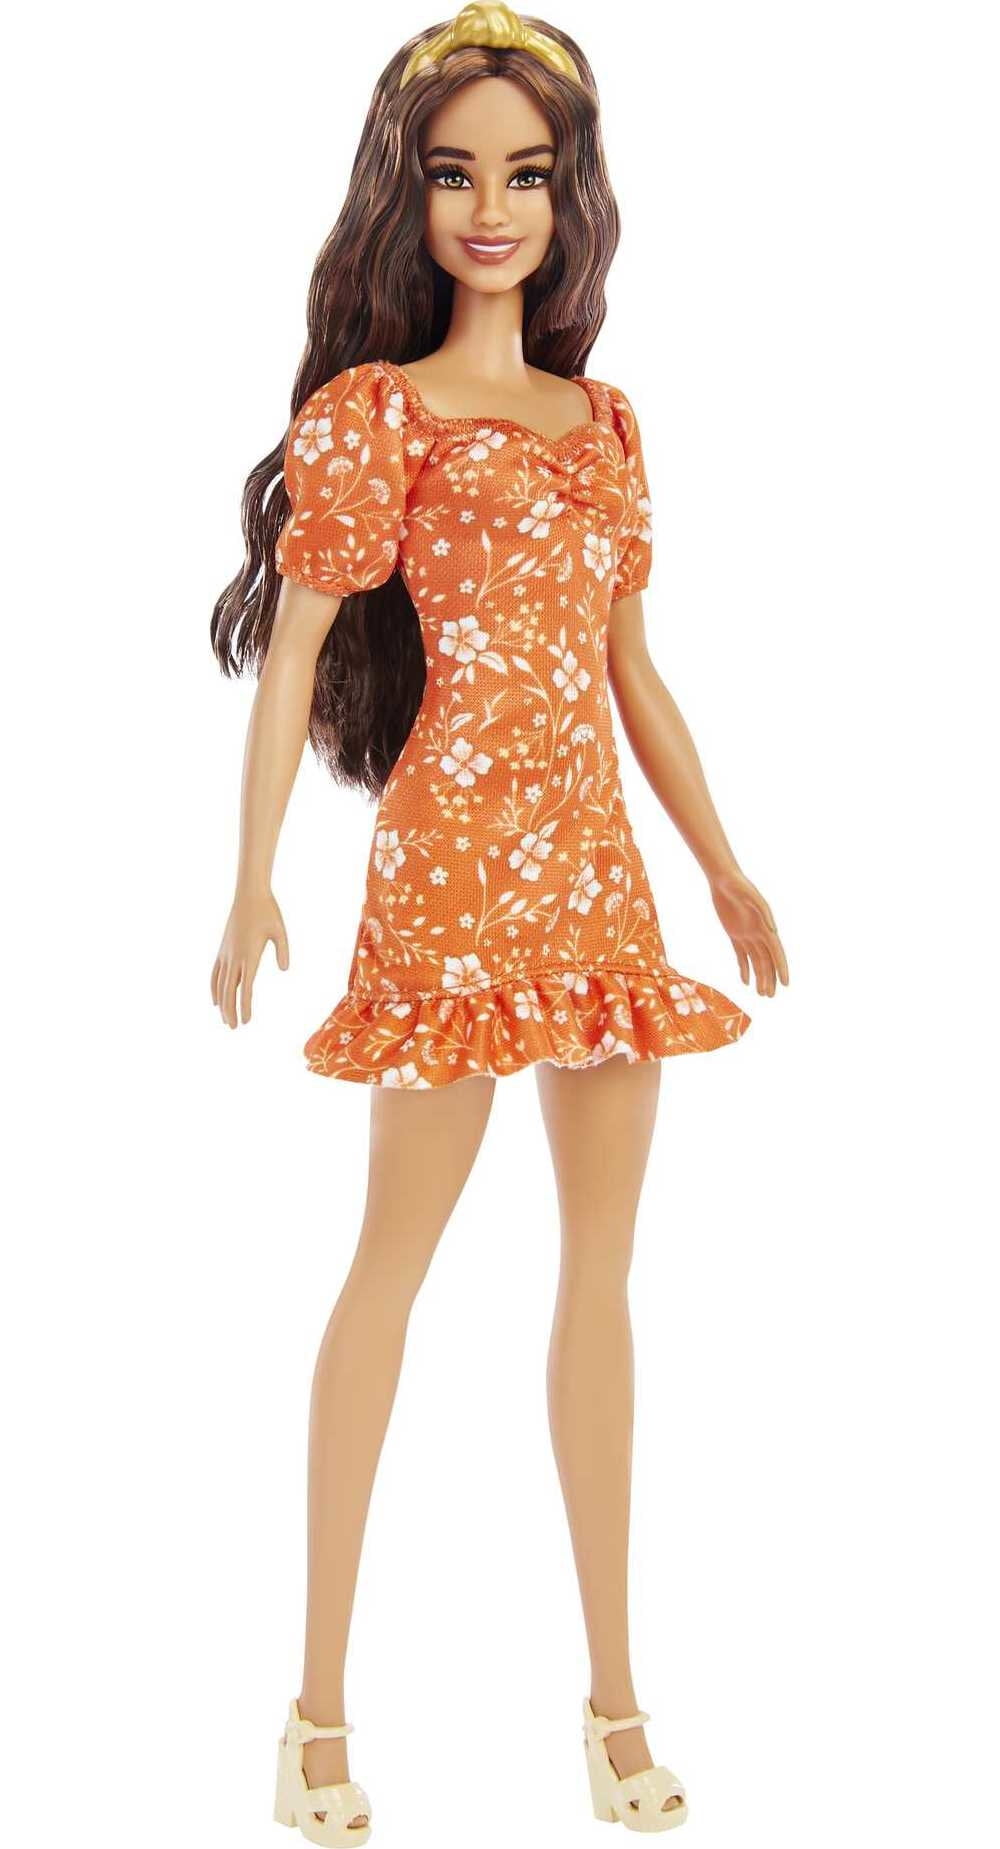 Gæsterne logik udendørs Barbie Fashionistas Doll #182 with Wavy Brunette Hair & Headband in Orange  Floral Dress & Heels - Walmart.com